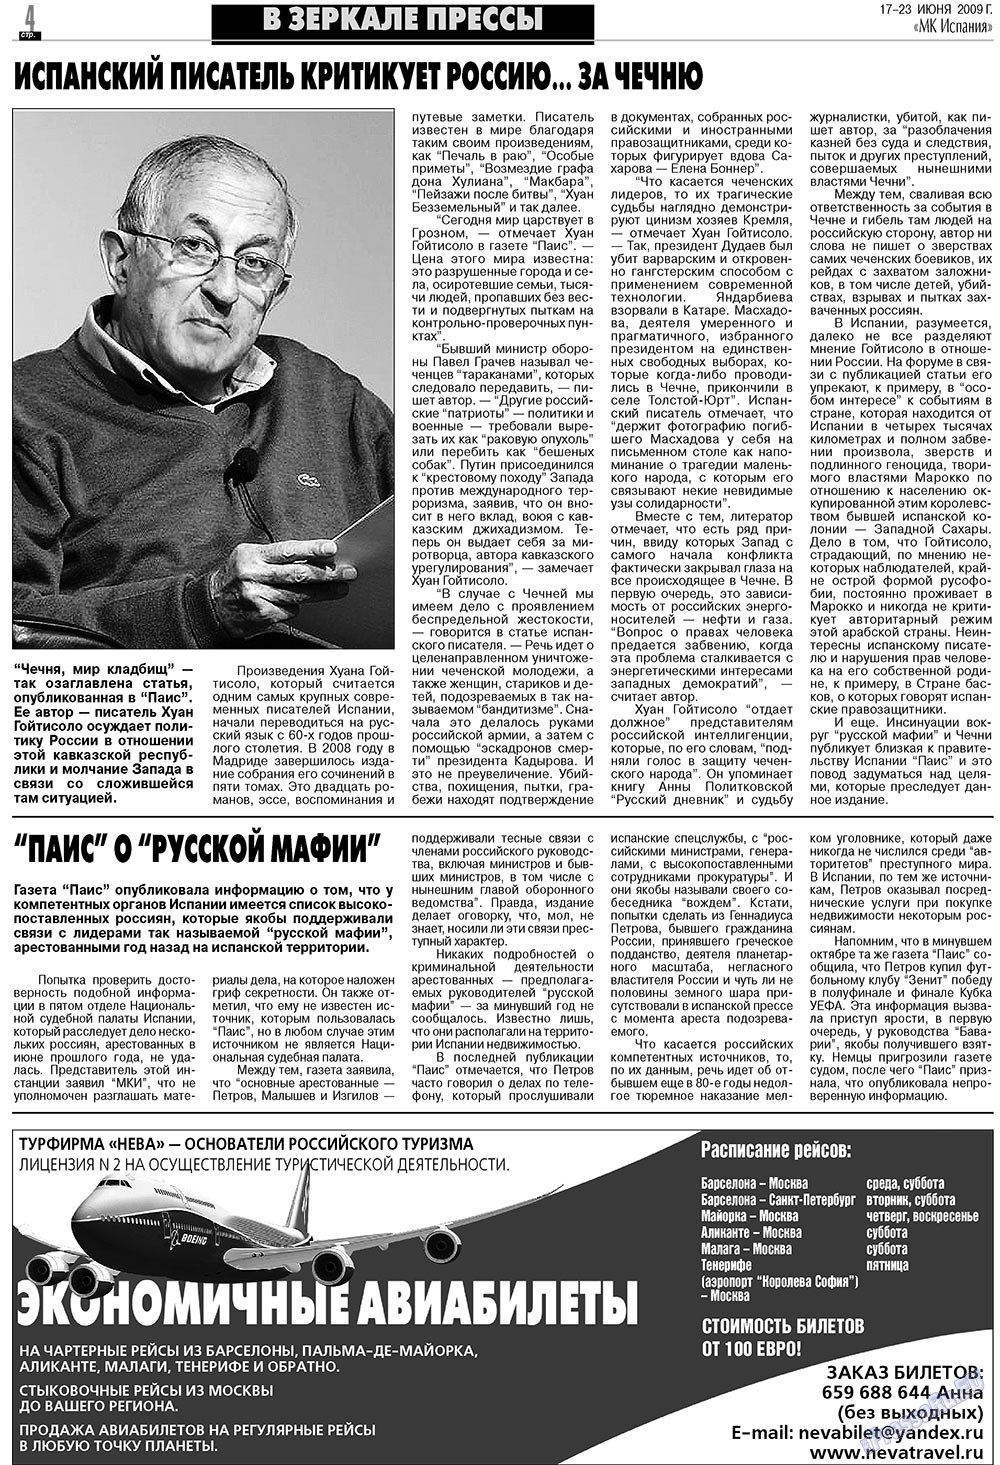 МК Испания, газета. 2009 №25 стр.4